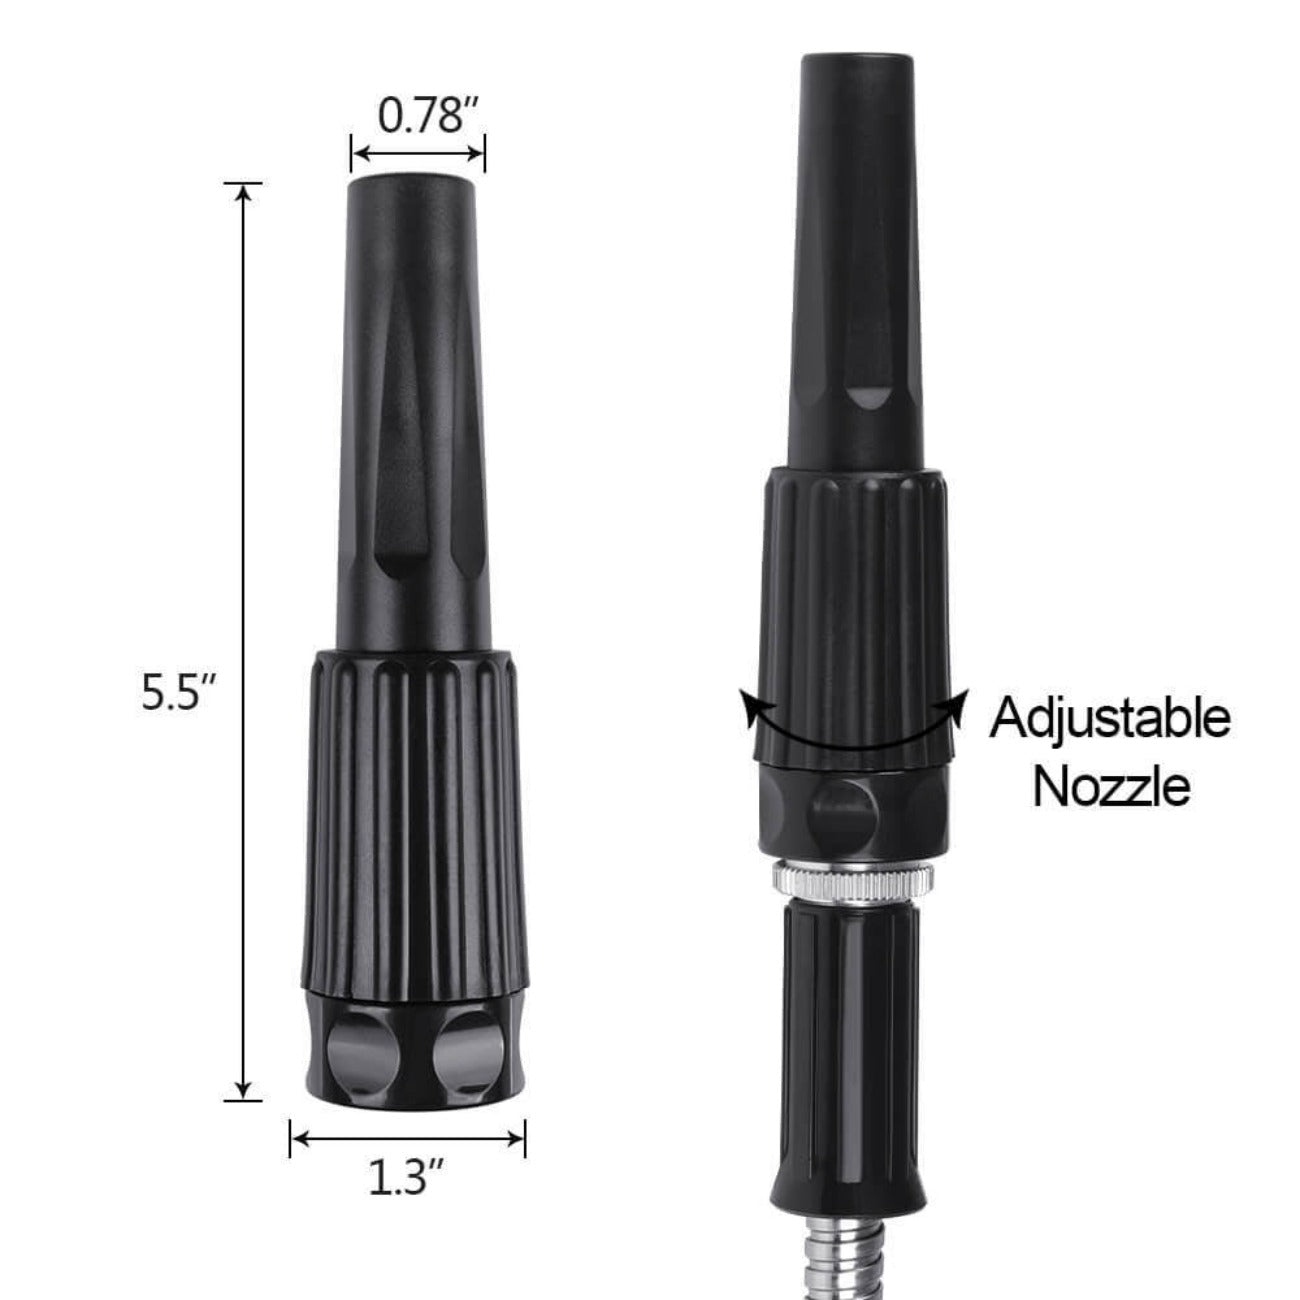 Adjustable Nozzle